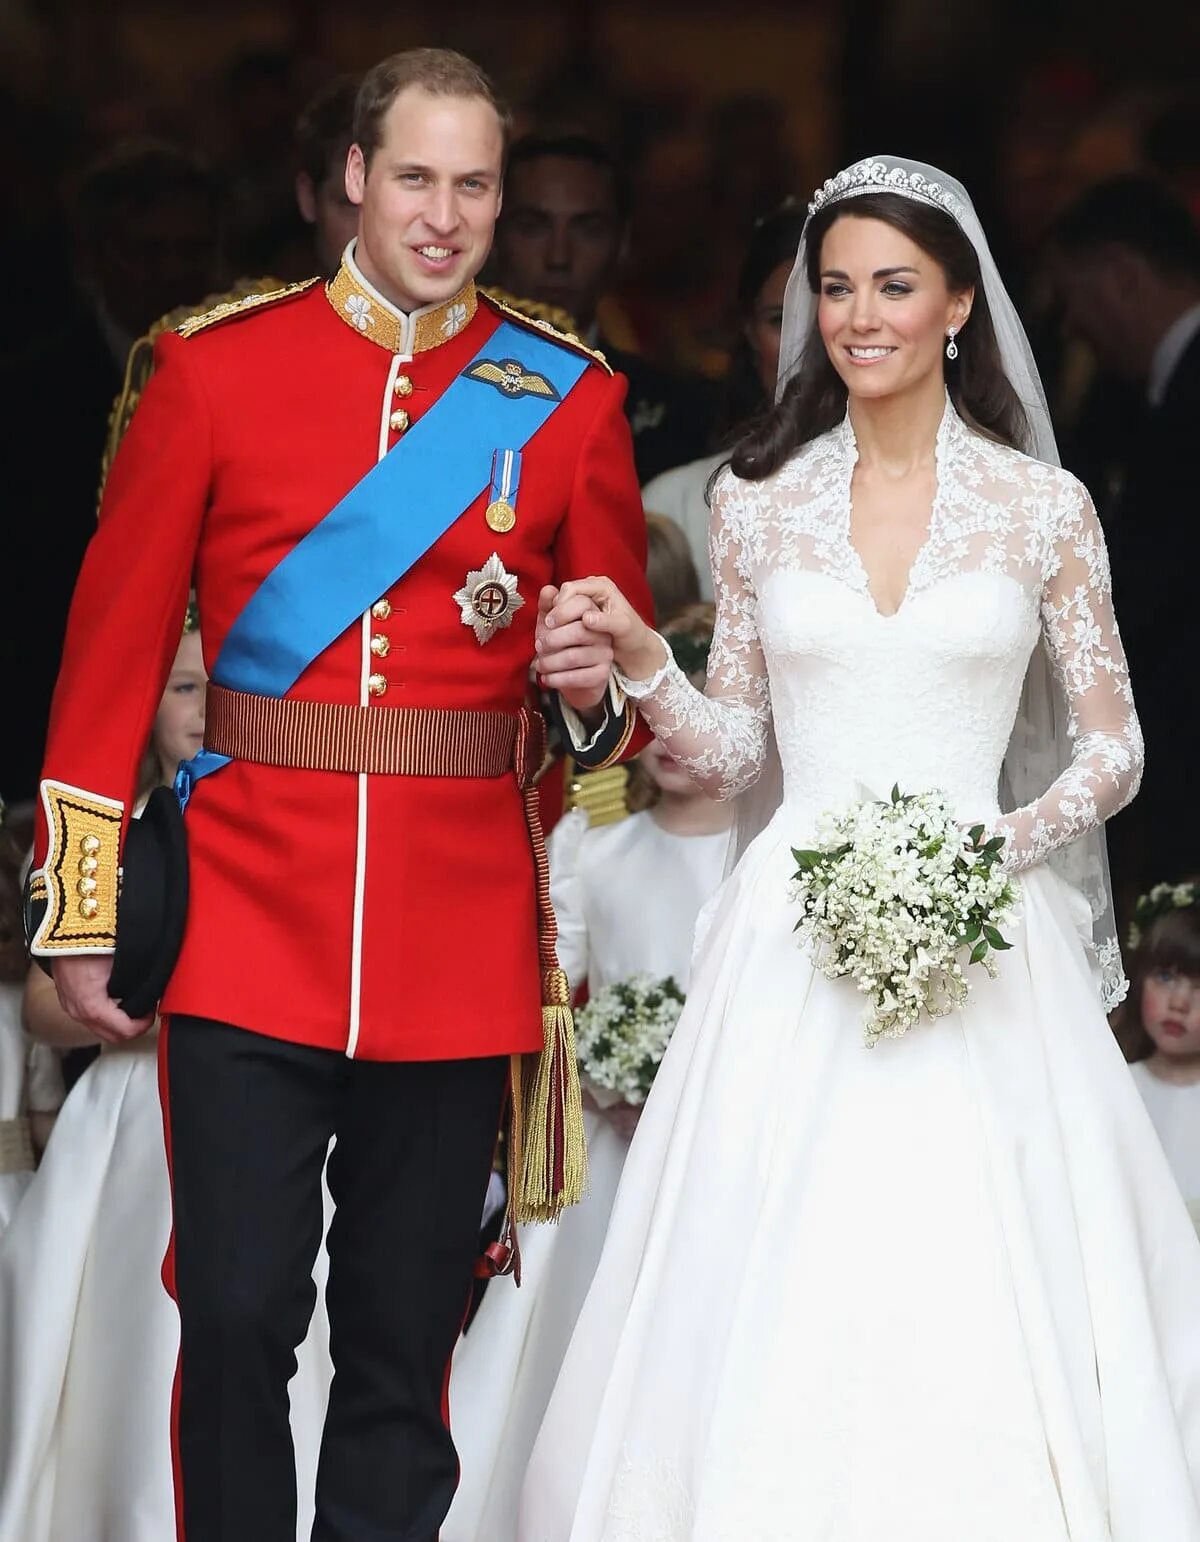 Миддлтон замуж вышла. Свадьба Кейт Миддлтон и принца Уильяма. Герцог Кембриджский Уильям свадьба. Свадебное платье Кэтрин Миддлтон. Свадьба принца Уильяма и Кэтрин Миддлтон.